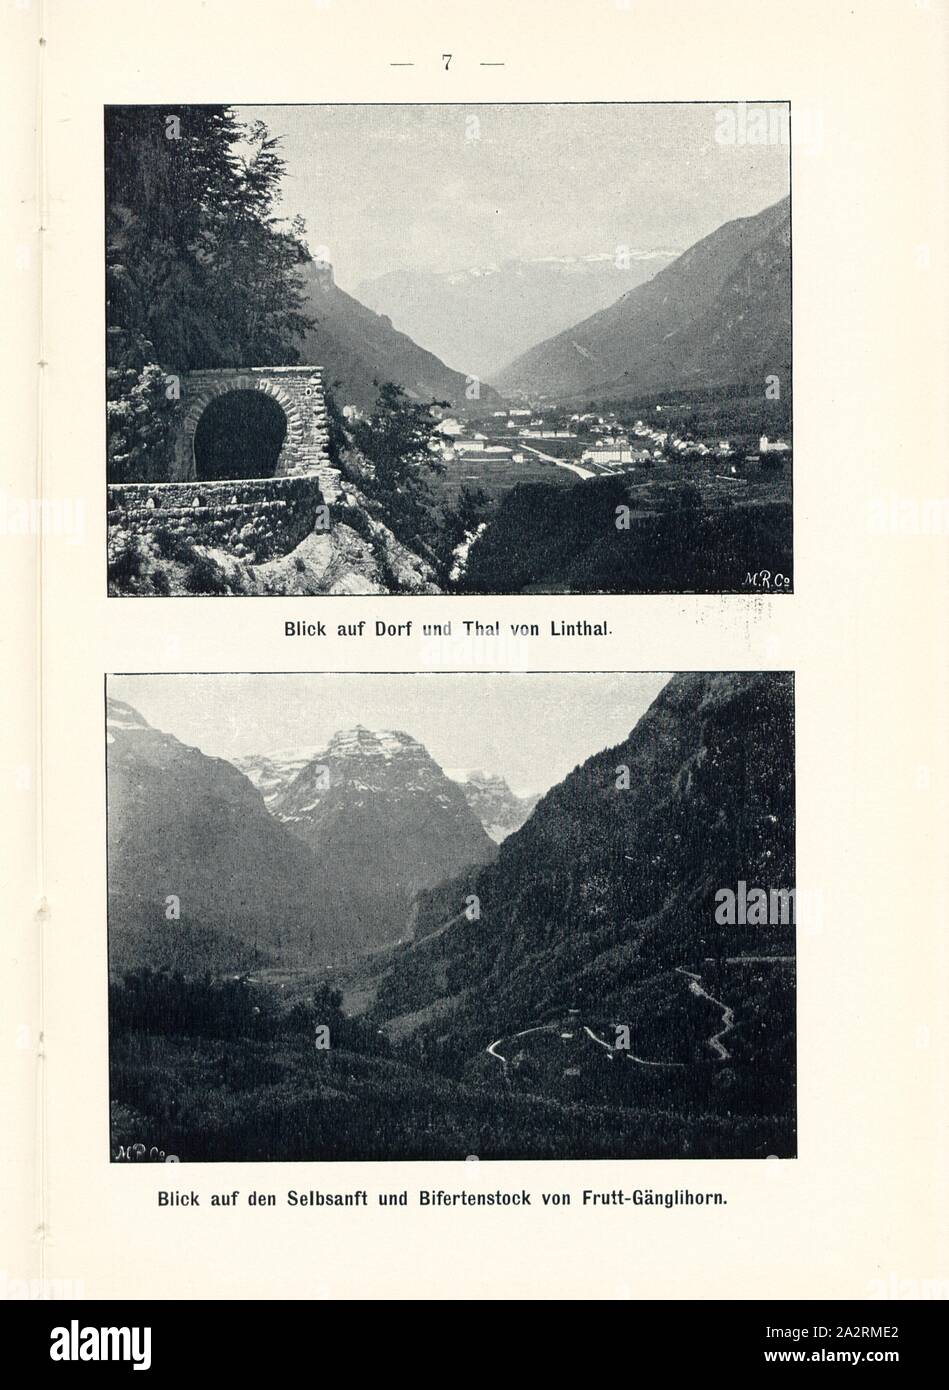 View of village and valley of Linthal and view of the Selbsanft and Bifertenstock frutt-Gänglihorn, Klausenstrasse, Signed: M.R.C, Fig. 6, p. 7, Meisenbach, Riffarth und Co. (imp.), 1900, J. Knobel: Illustrierter Reisebegleiter für die Alpenstrasse des Klausen und ihre Zufahrtslinien. Glarus: Buchdruckerei J. Spälti, 1900 Stock Photo